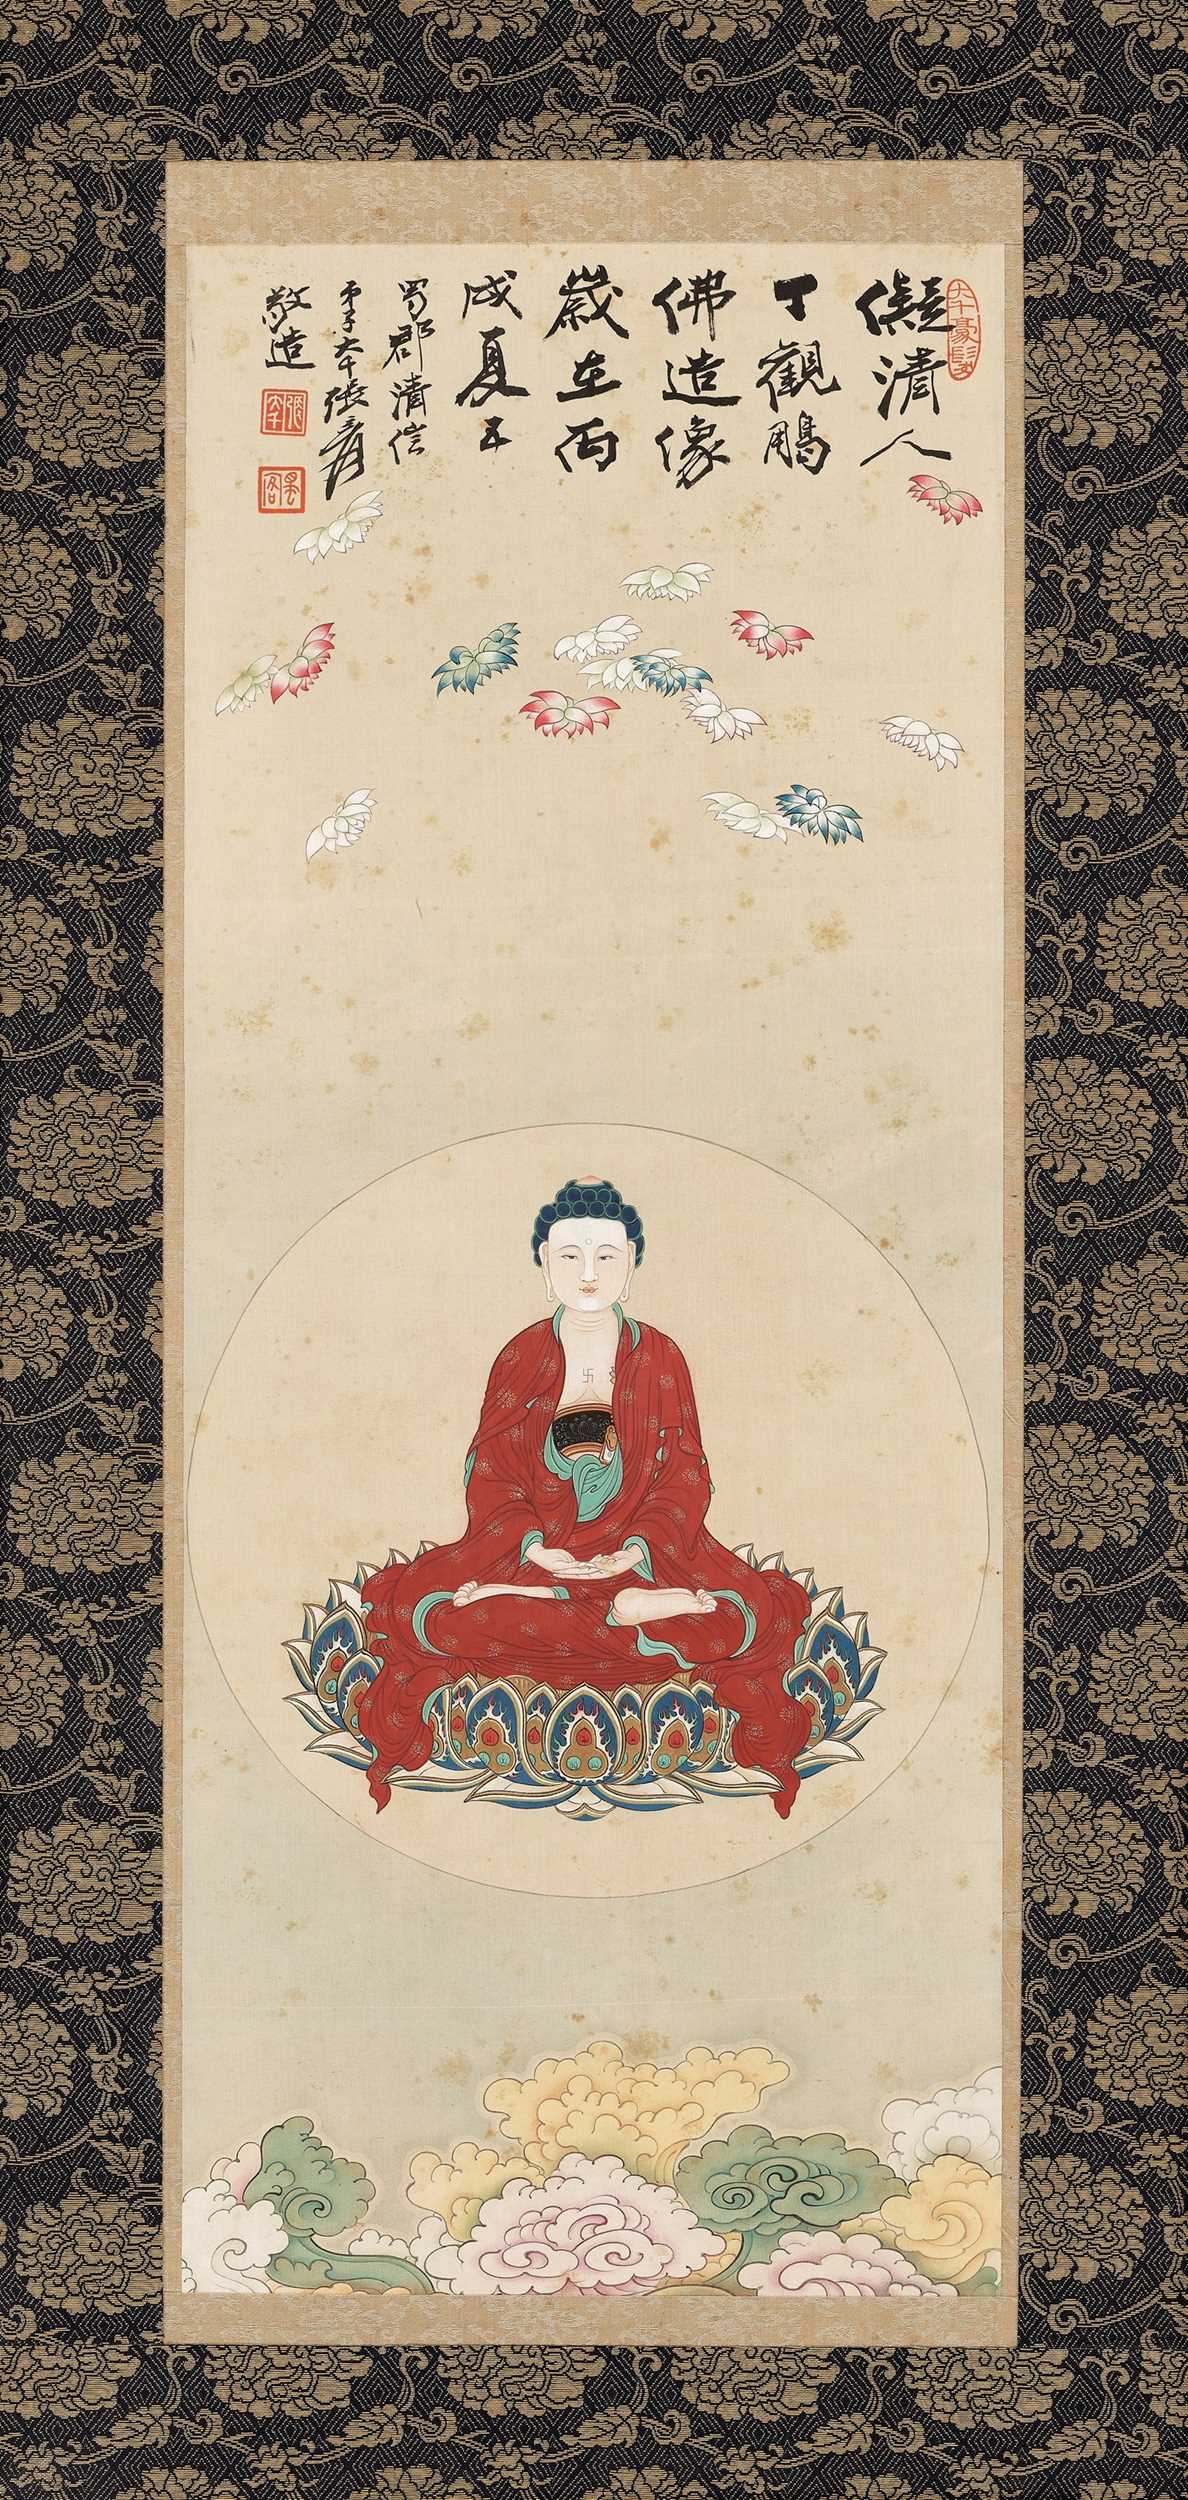 Lot 549 - ‘BUDDHA AMITABHA’, BY ZHANG DAQIAN (1899-1983)